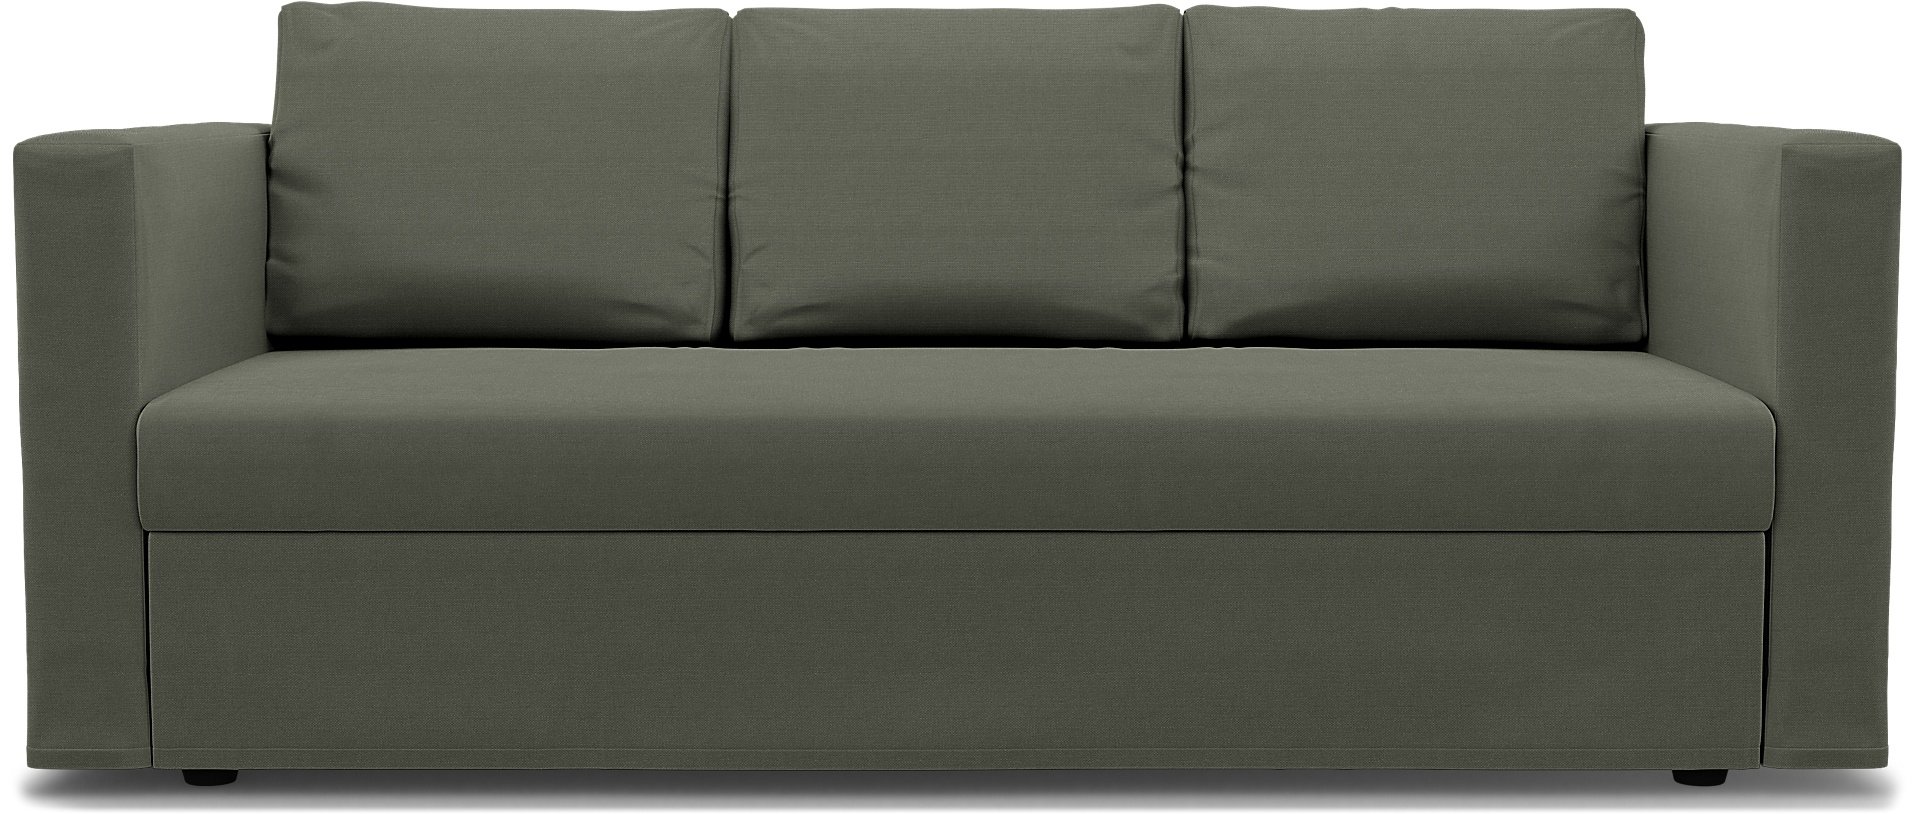 IKEA - Friheten 3 Seater Sofa Bed Cover, Rosemary, Linen - Bemz